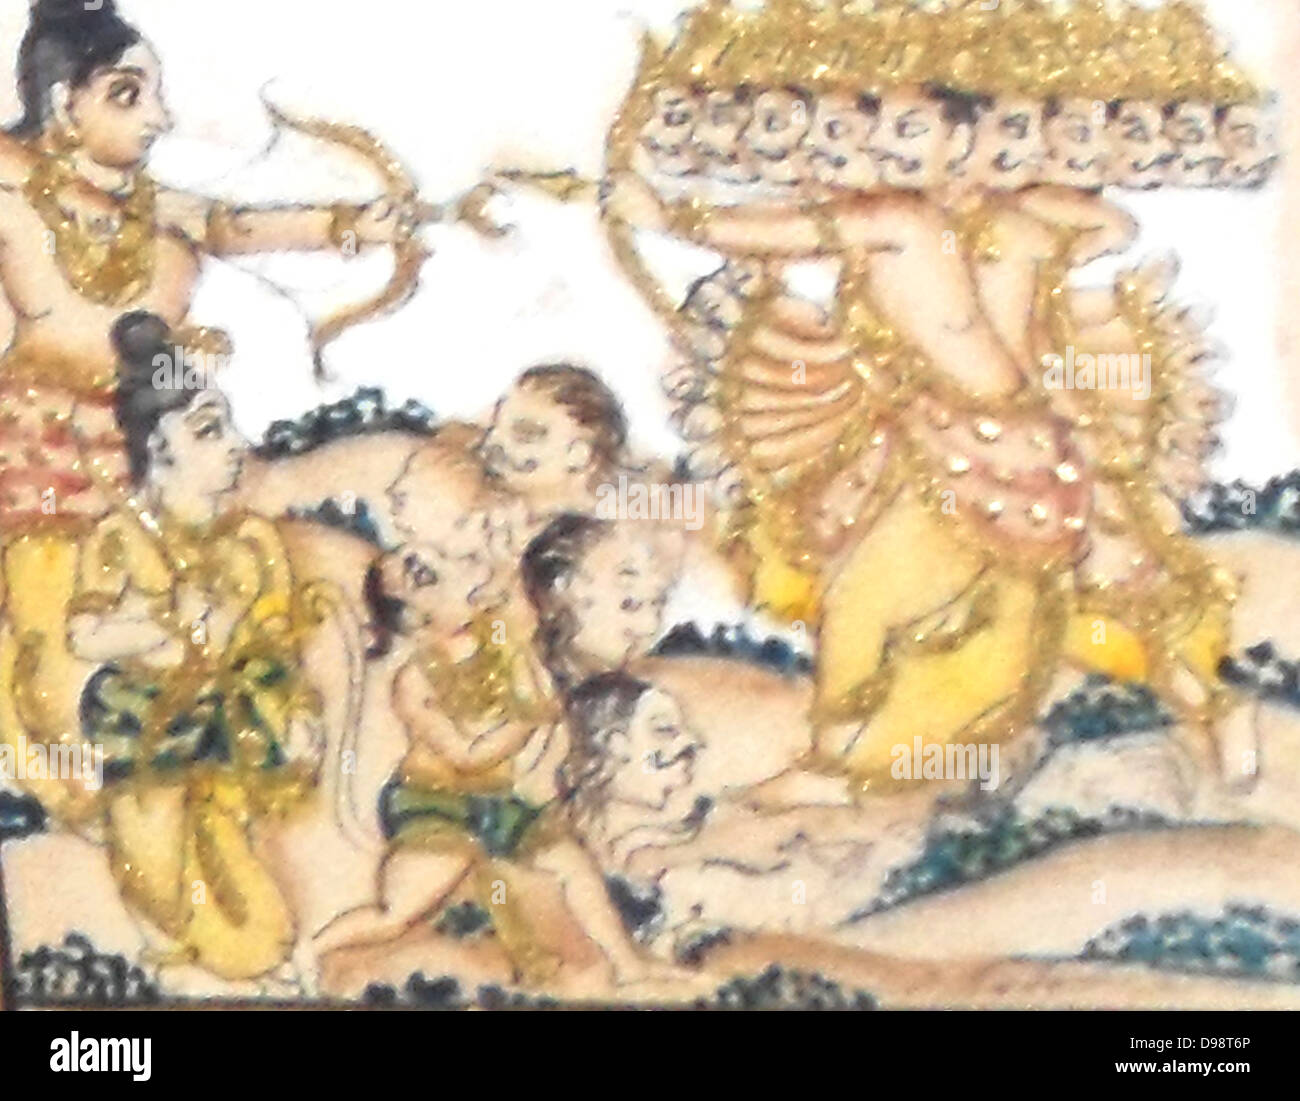 Aus dem 19. Jahrhundert Email und glasierte Bild, der hinduistische Legende des Ramayana Detail. Das Ramayana ist einer der zwei epische Hindu Gedichte, das andere ist das Mahabharata. Die Ramayana beschreibt eine Liebesgeschichte zwischen Rama, der alte König, und Sita, der von RAVAN, der König von Ceylon erfasst wird. Rama legt Belagerung nach Ceylon und Gewinne, die Sita Stockfoto